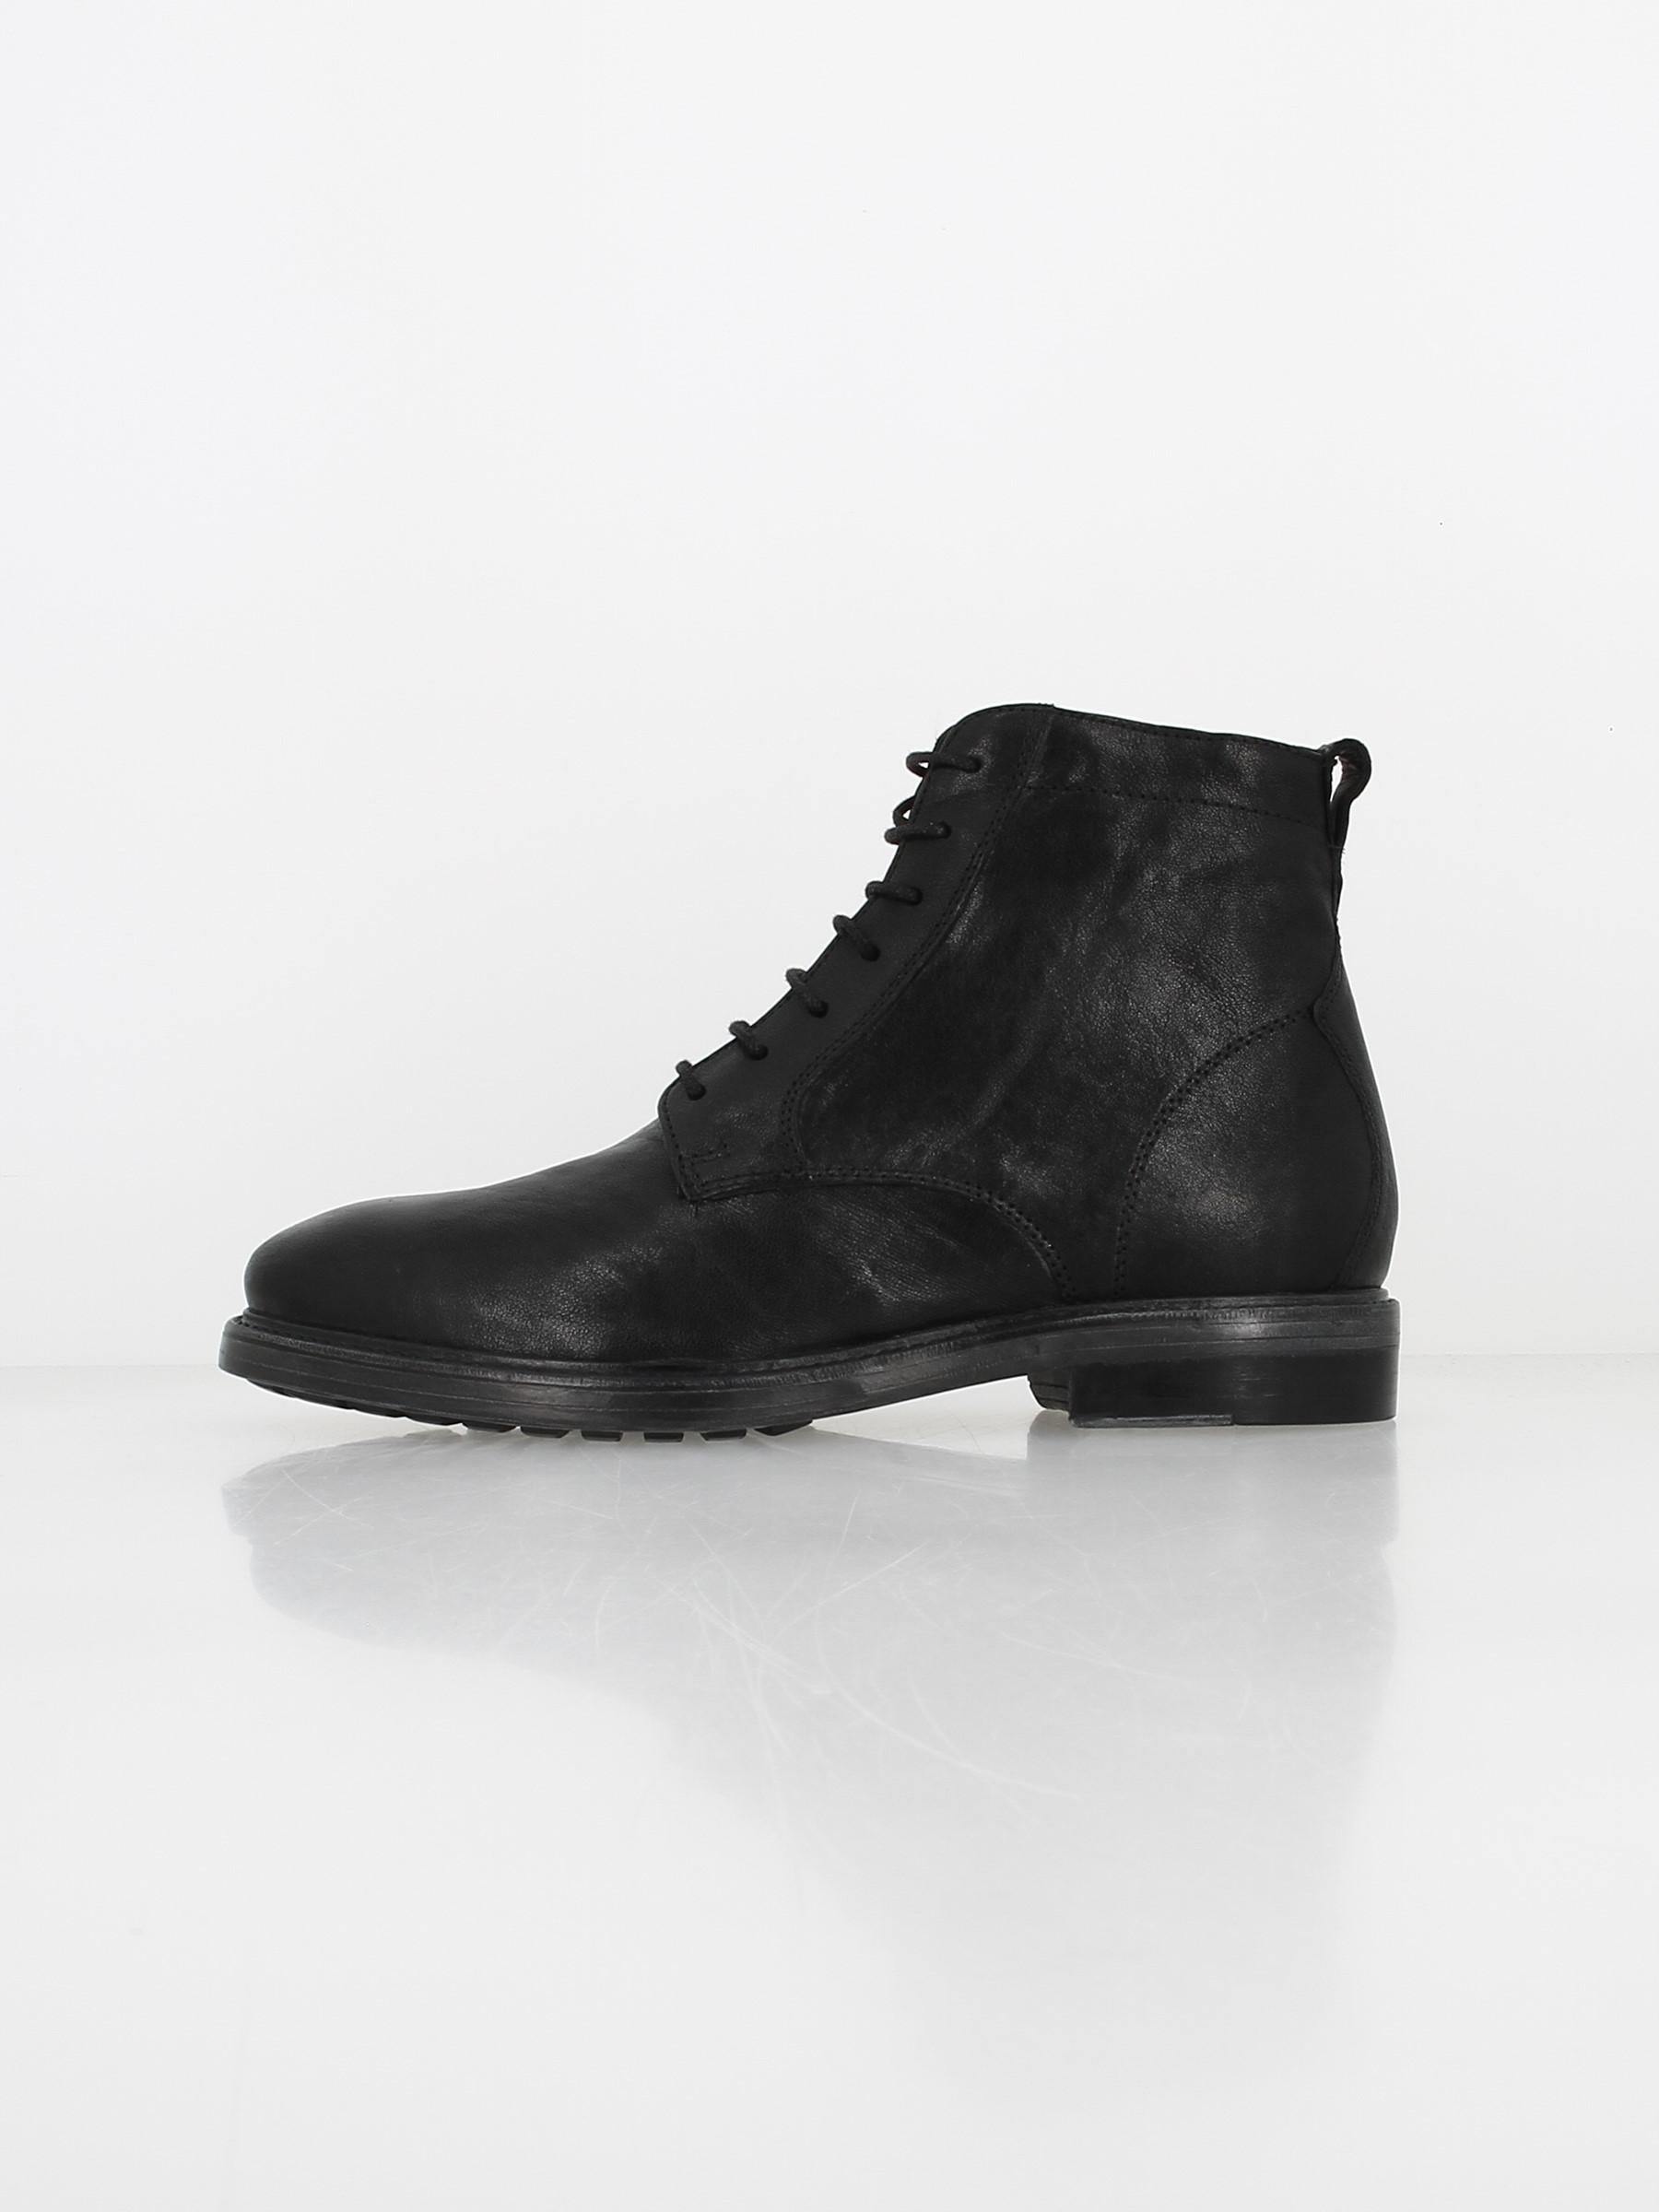 Boots aurelio noir homme - Géox